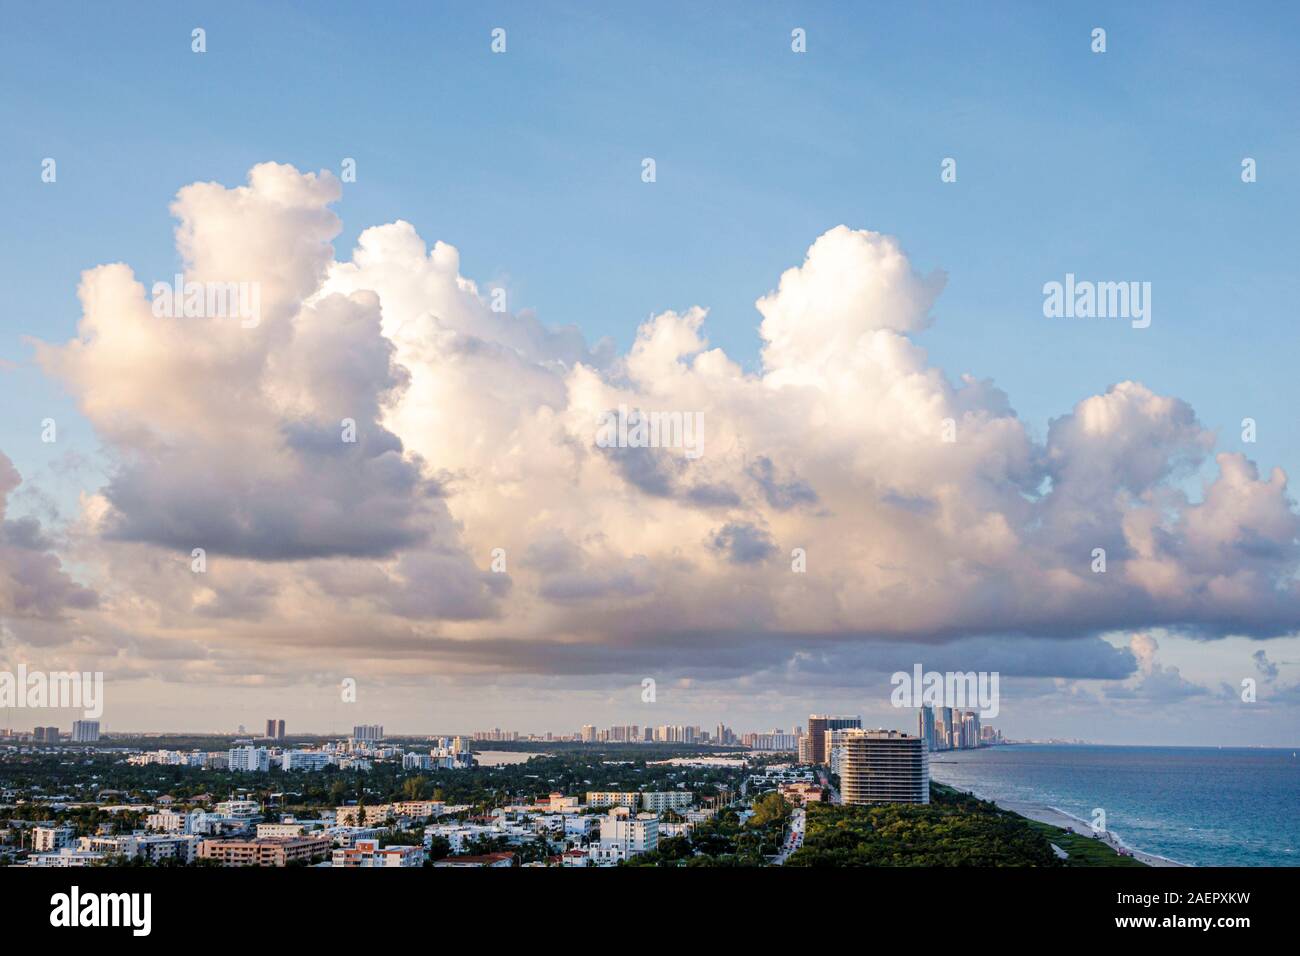 Miami Beach Florida, North Beach, skyline della città, riva, nuvole, acqua meteorologica, Oceano Atlantico, vista aerea dall'alto, FL191025019 Foto Stock